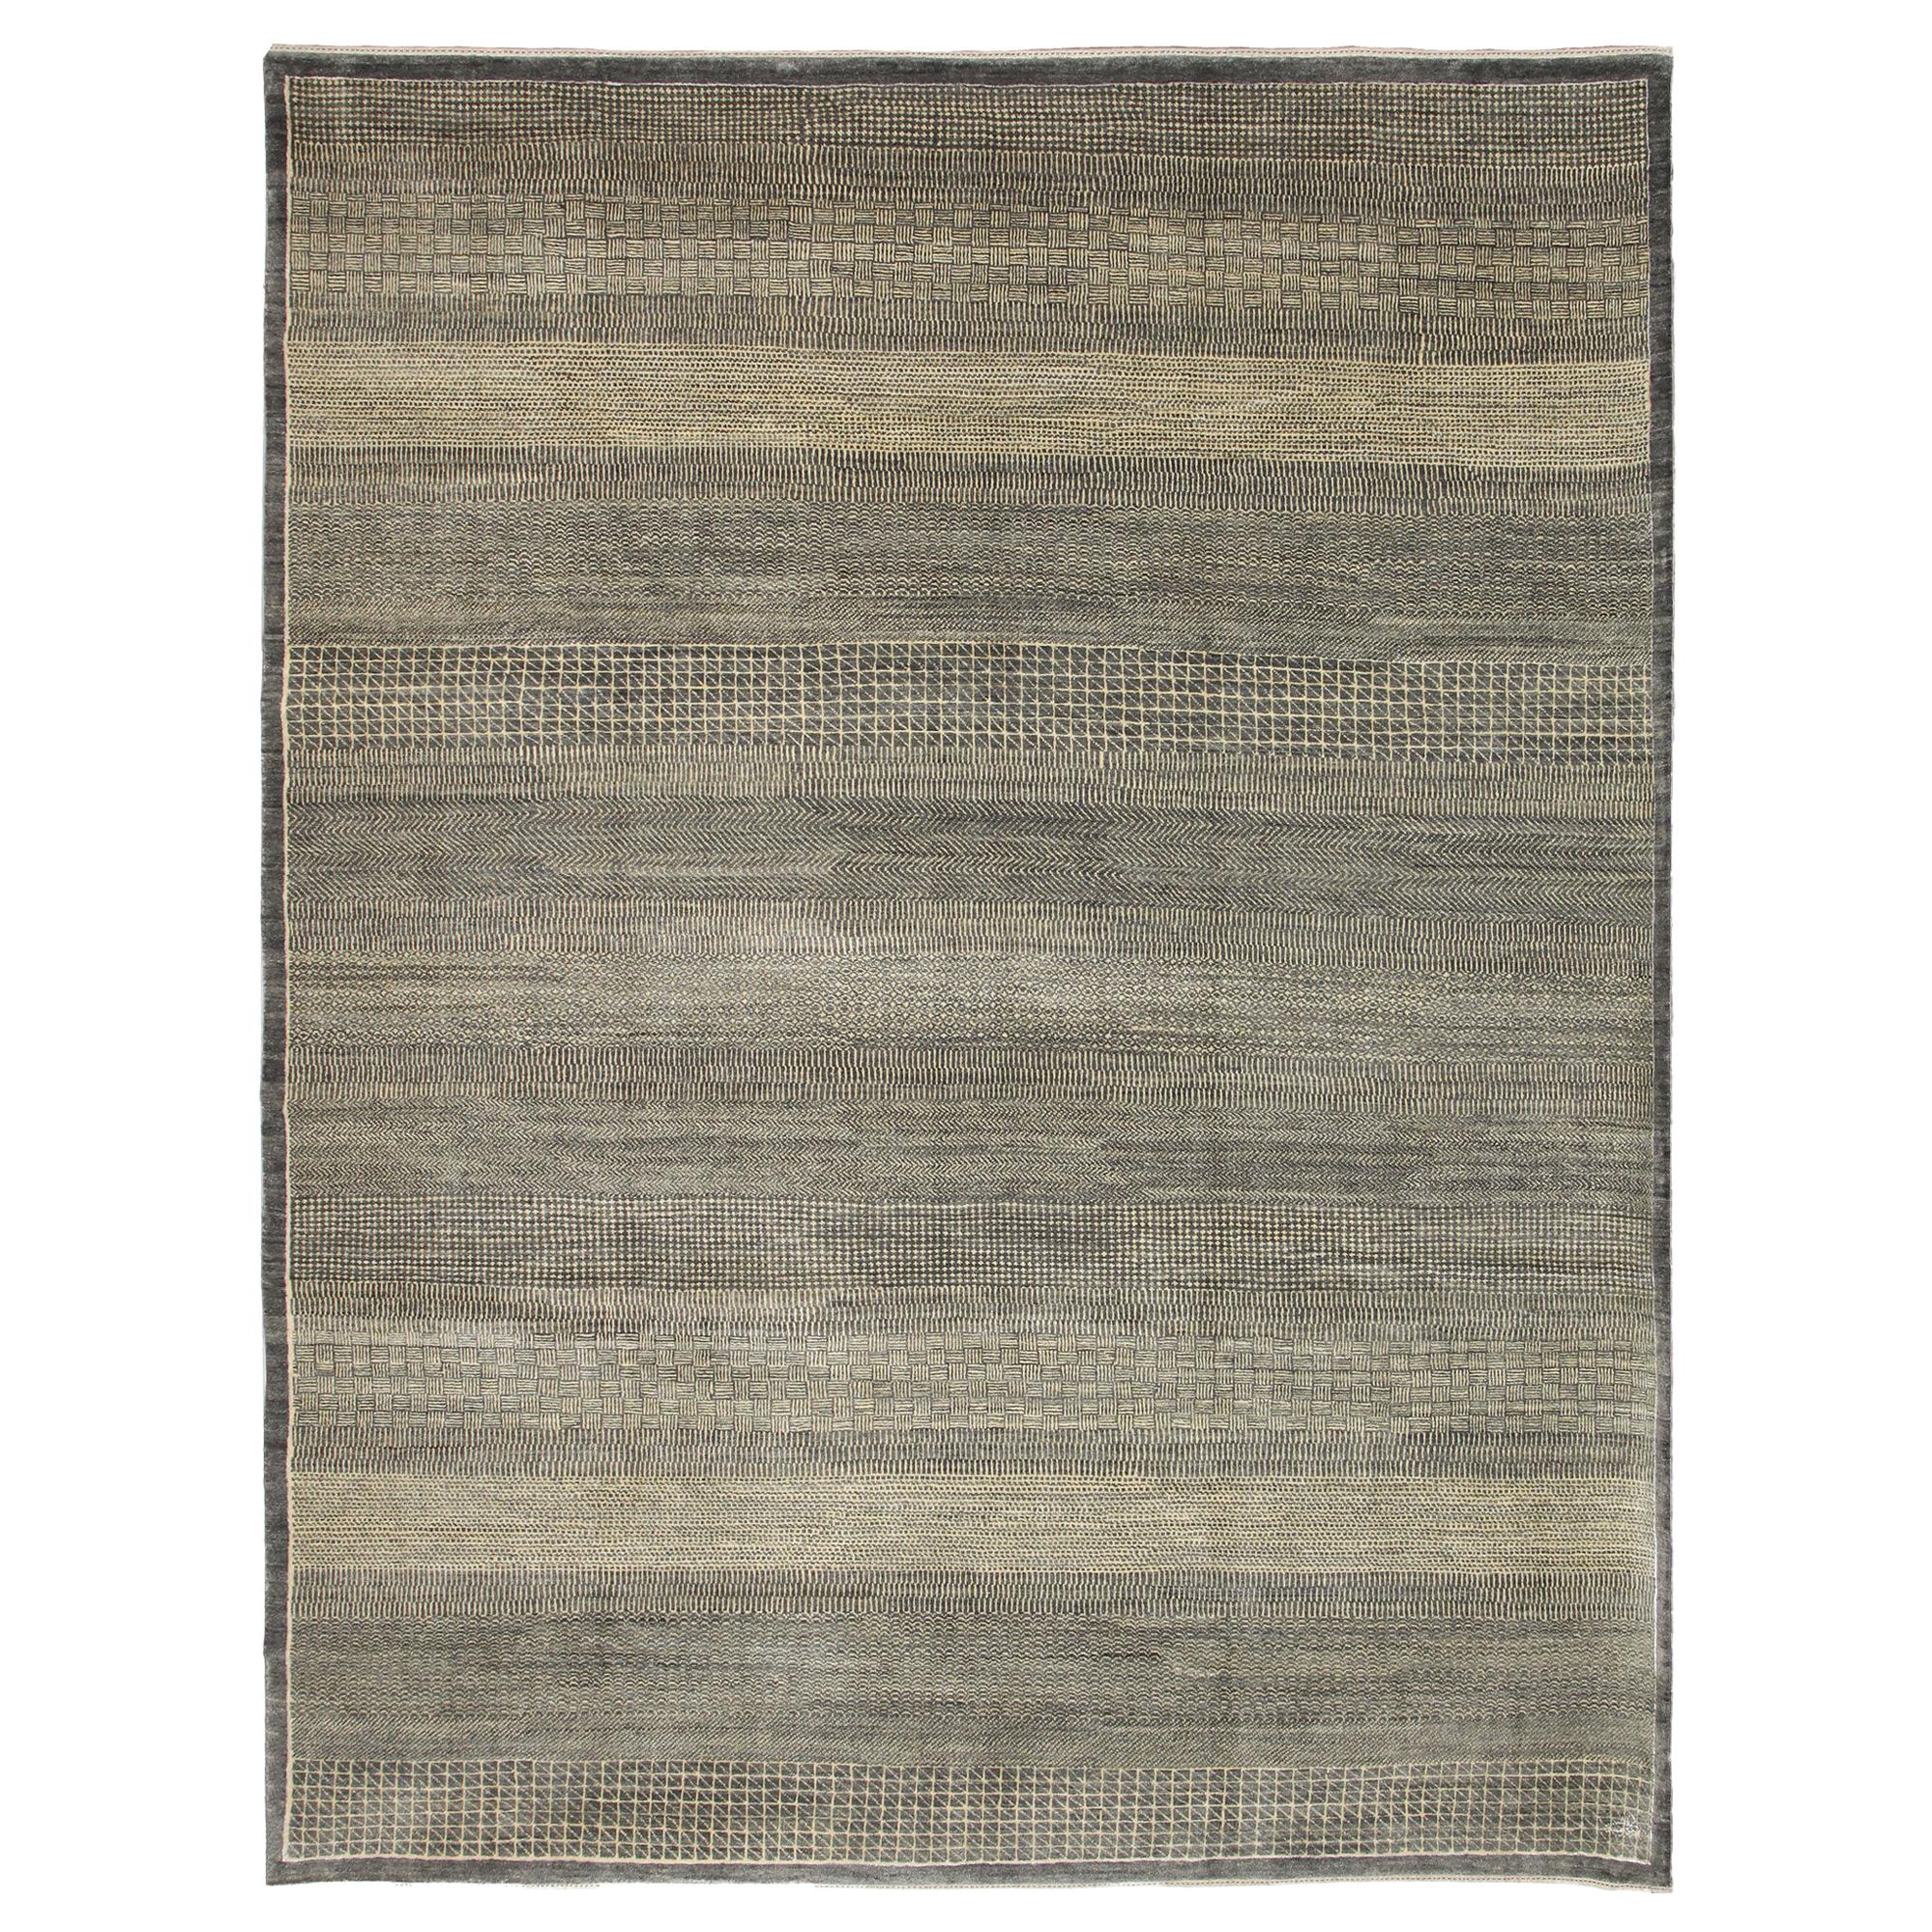 Orley Shabahang "Rain" Contemporary Persian Rug, Gray and Cream, 8' x 10'